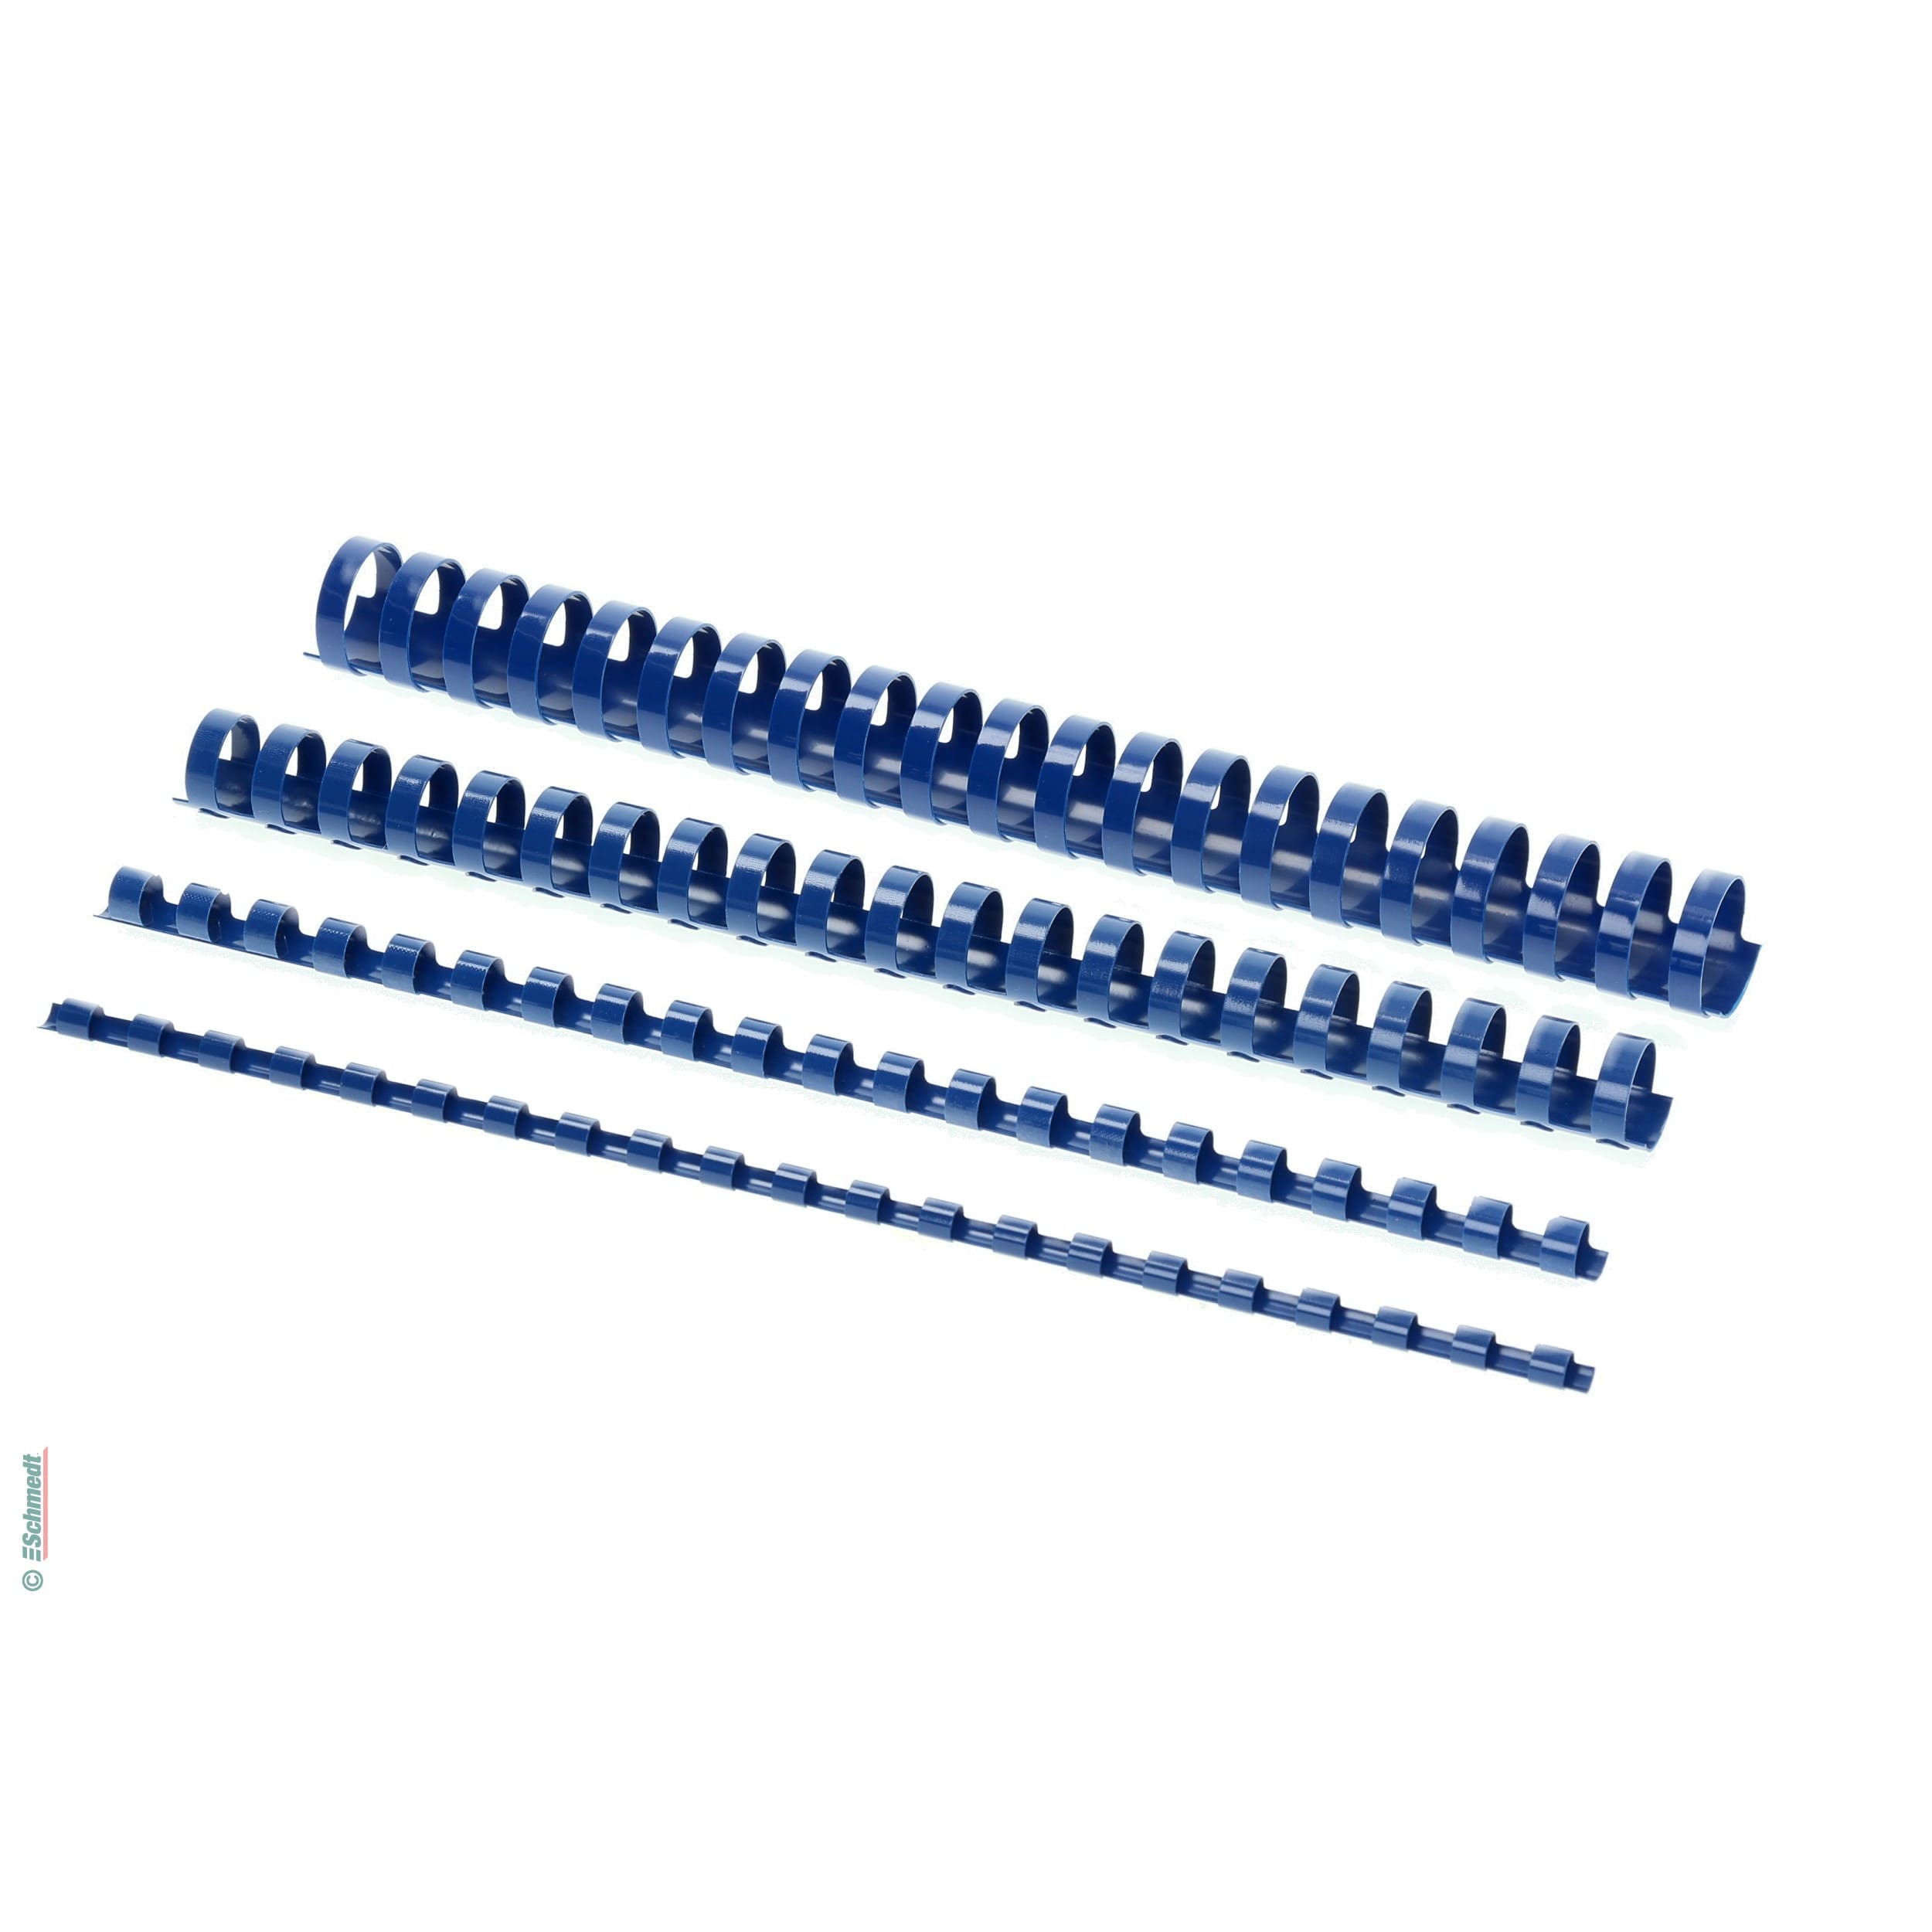 Plastikbinderücken - rund  - farbig - Durchmesser (in mm) 25 - Farbe blau - » Optimaler Binderücken-Ø = Blockstärke + 3 mm... - Bild-1